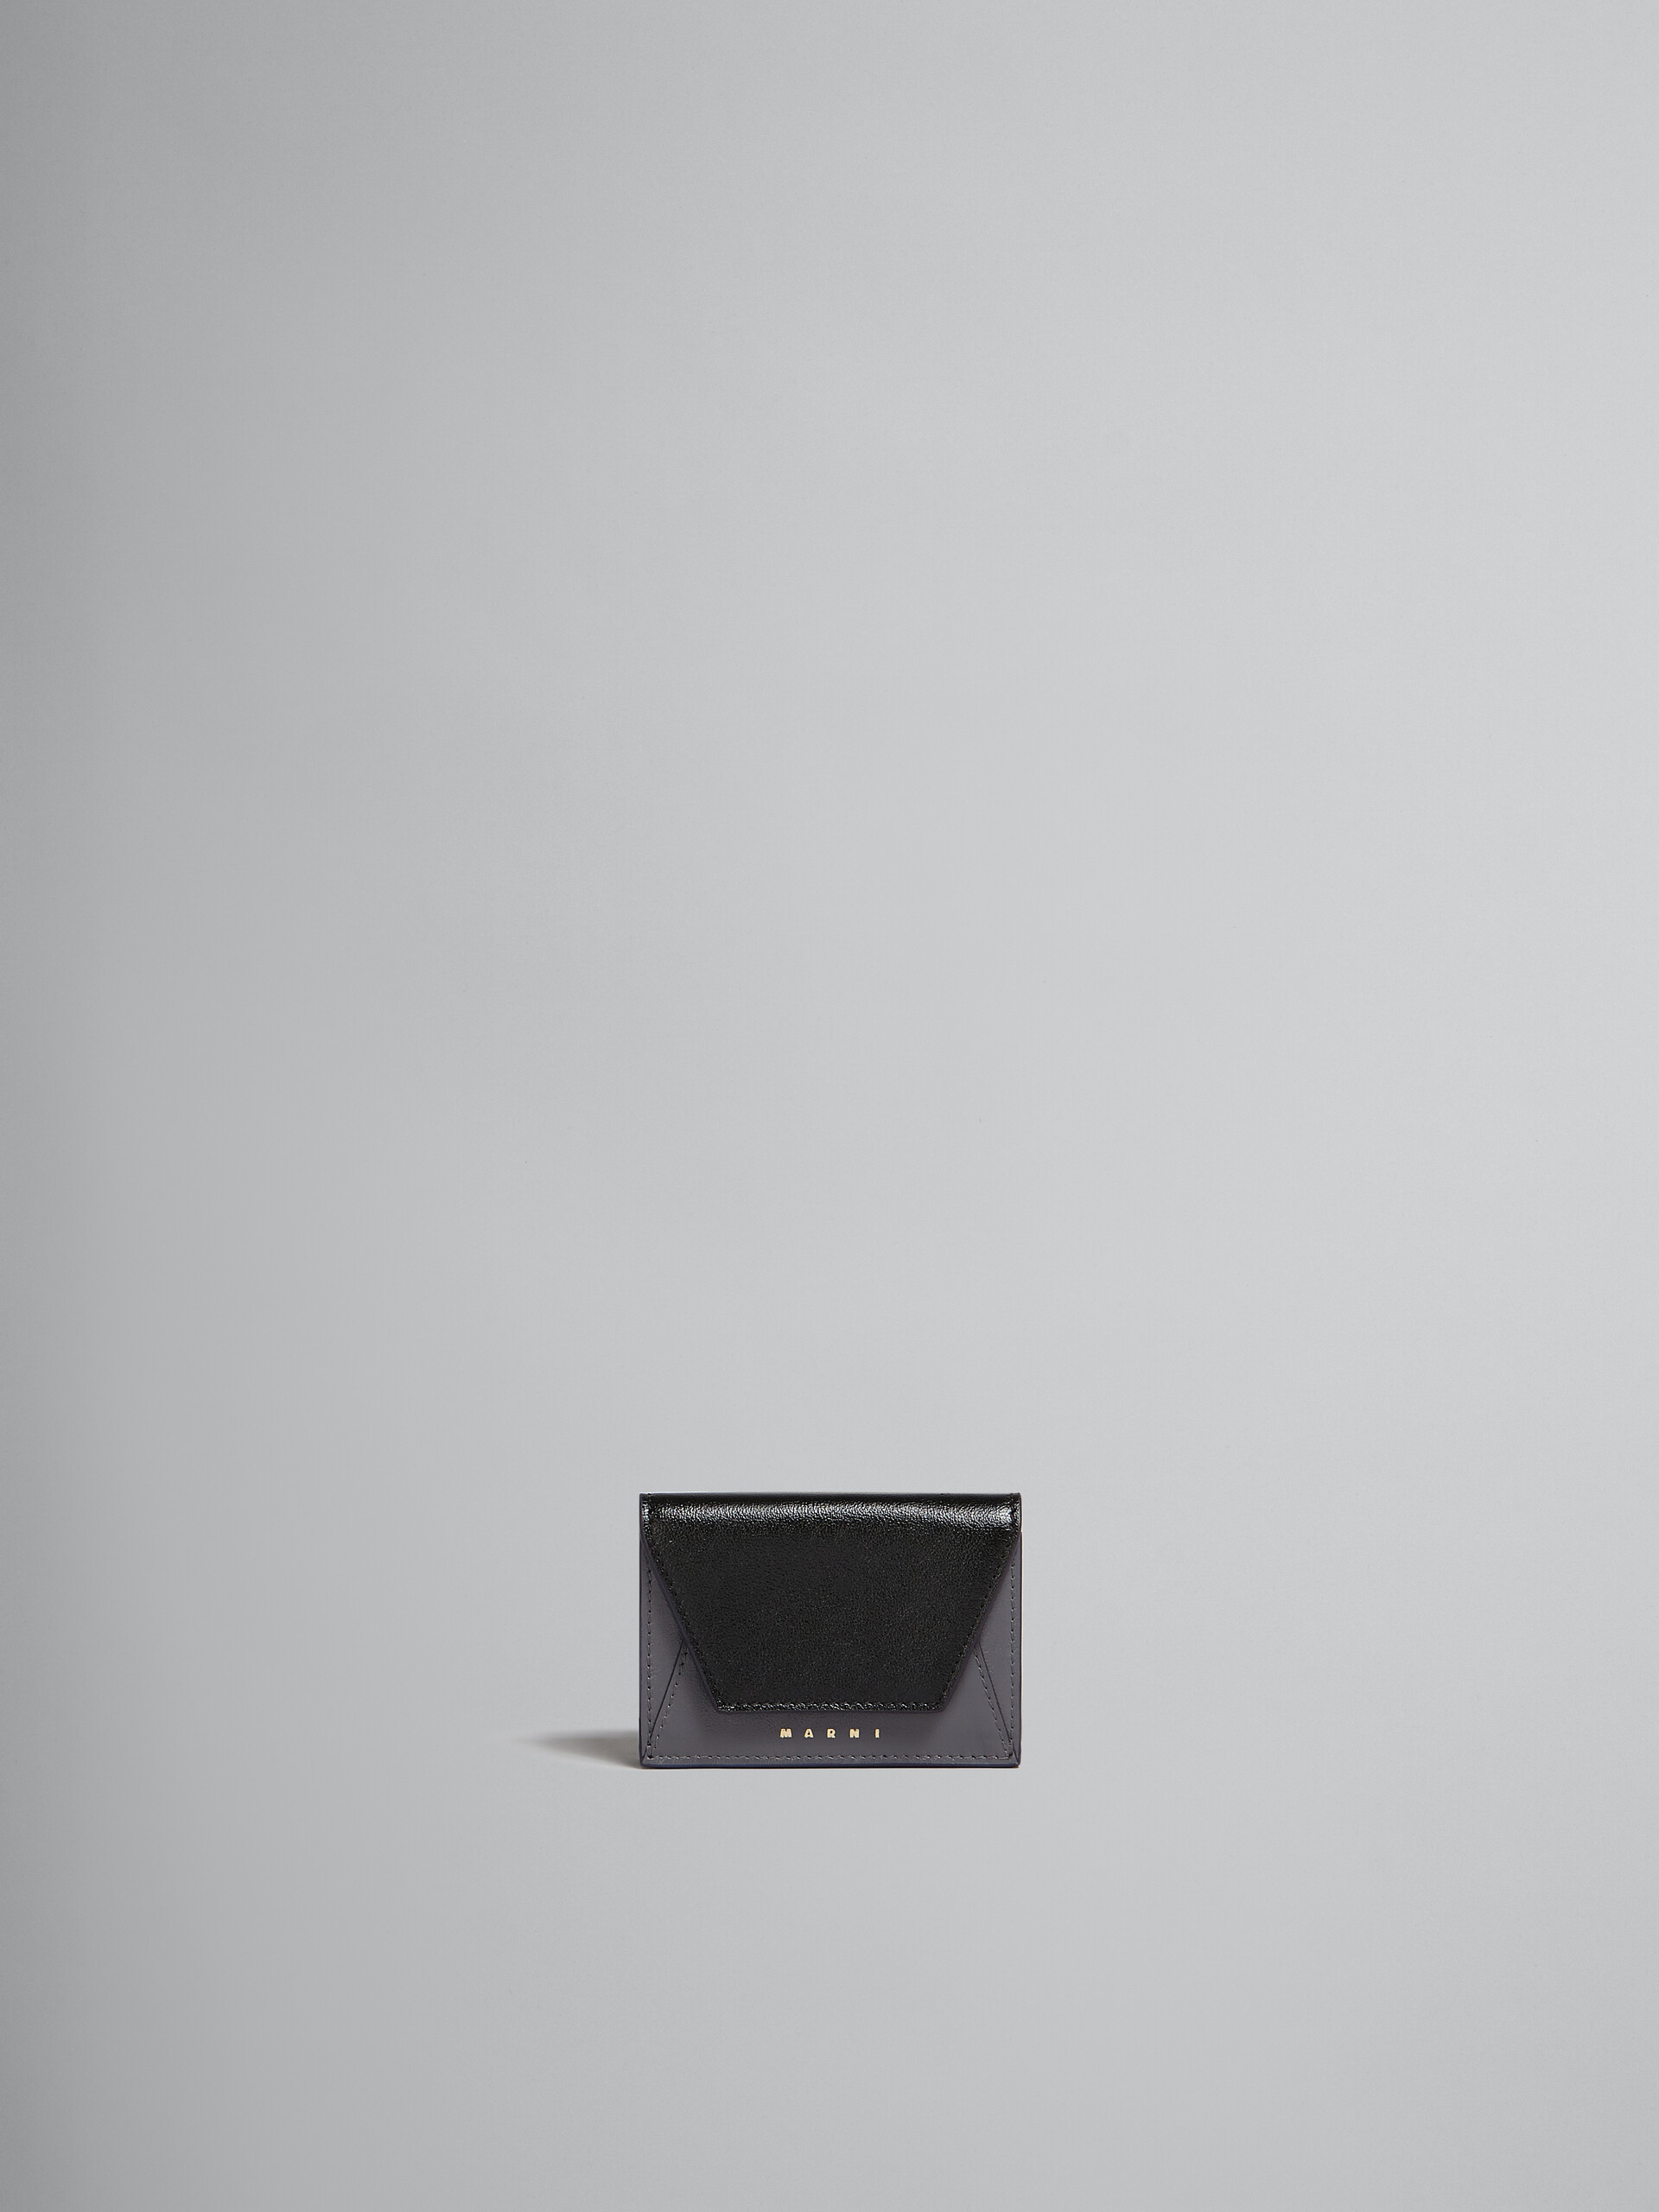 Portafoglio tri-fold in pelle grigia e nera - Portafogli - Image 1